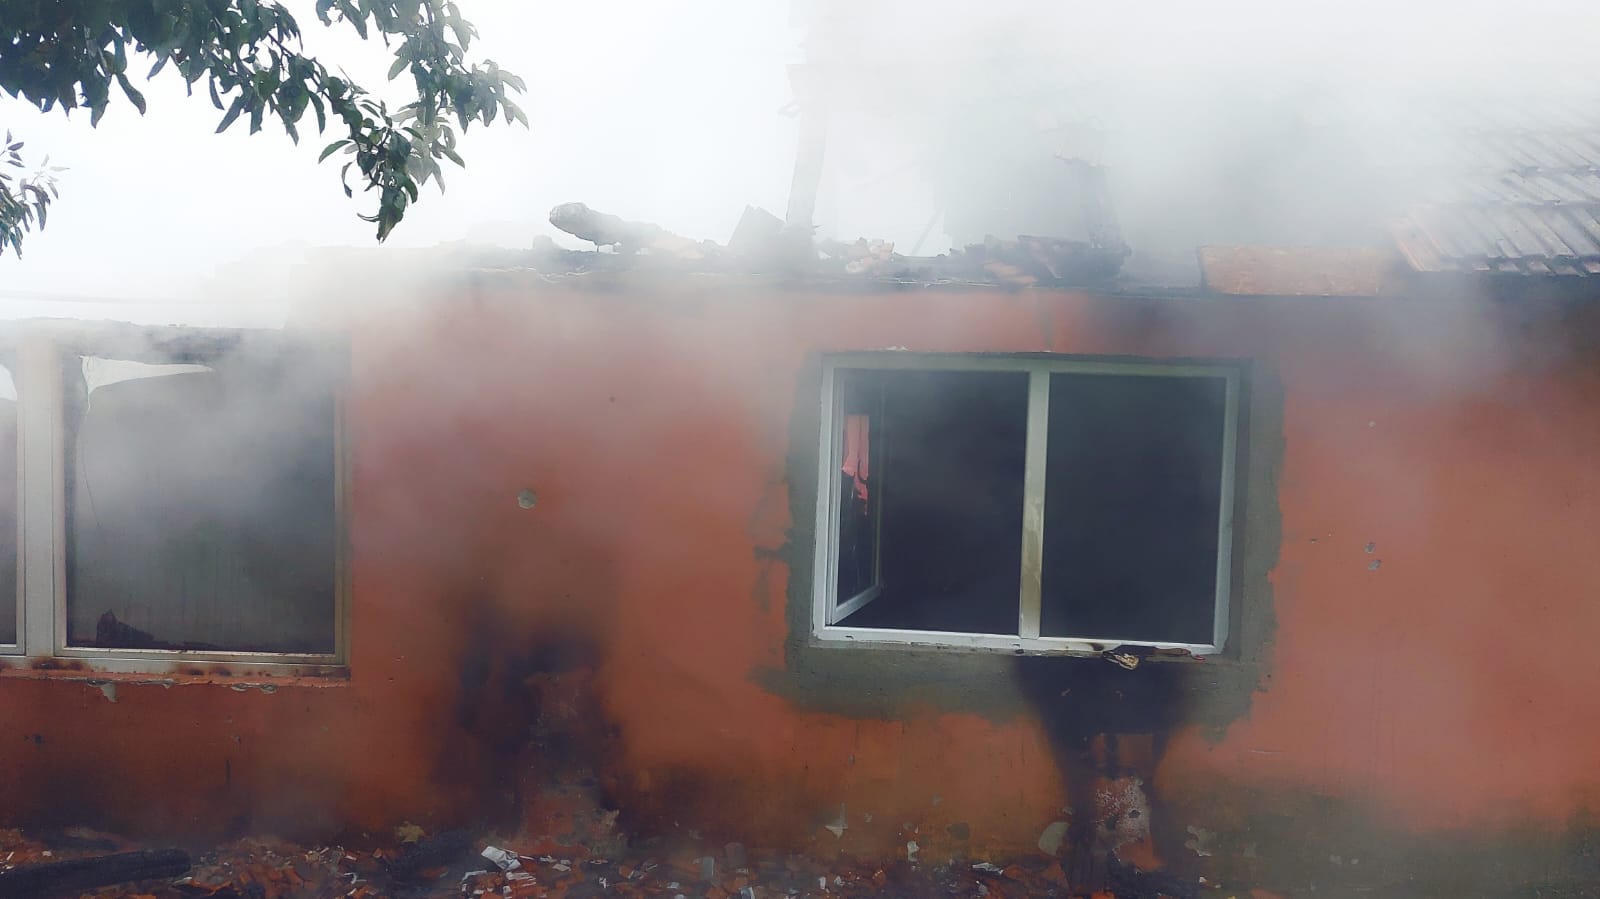 Incendiu la o casă din localitatea Zam, în timp ce proprietarii erau plecați în concediu. Pompierii – anunțați de vecini